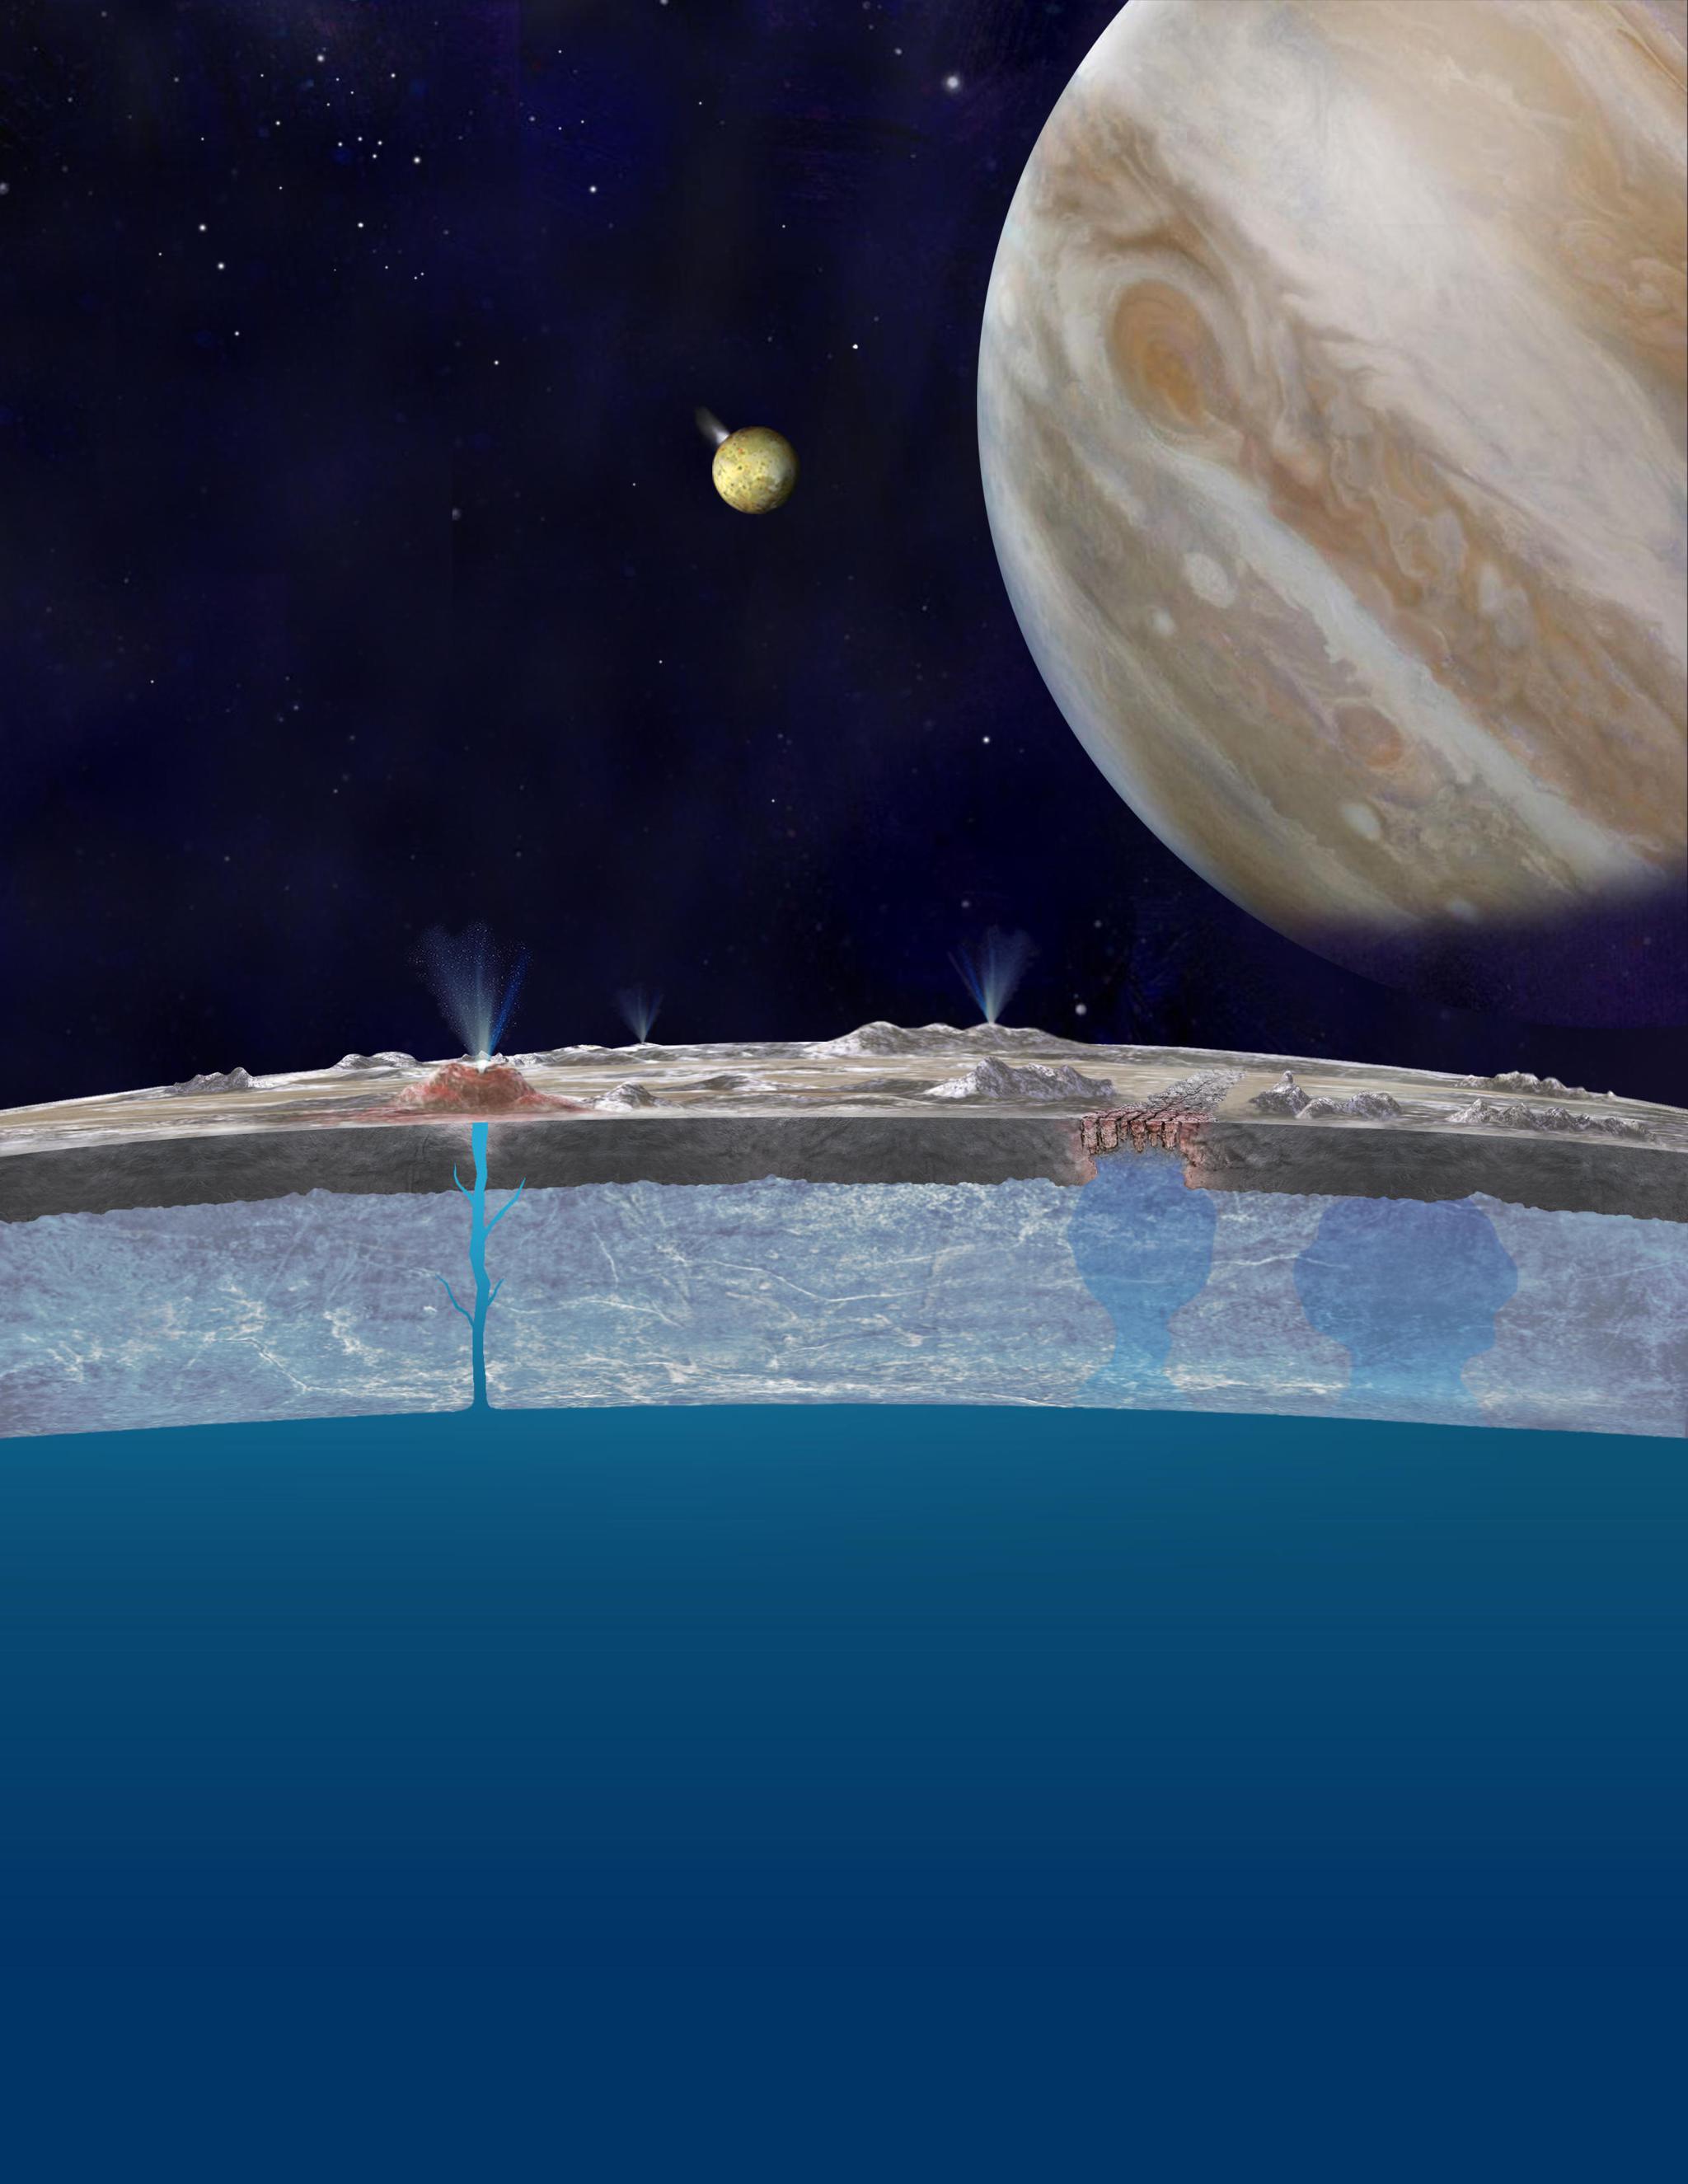 人类探测器首次穿过木卫二的液态喷流,为寻找外星生命奠定基础